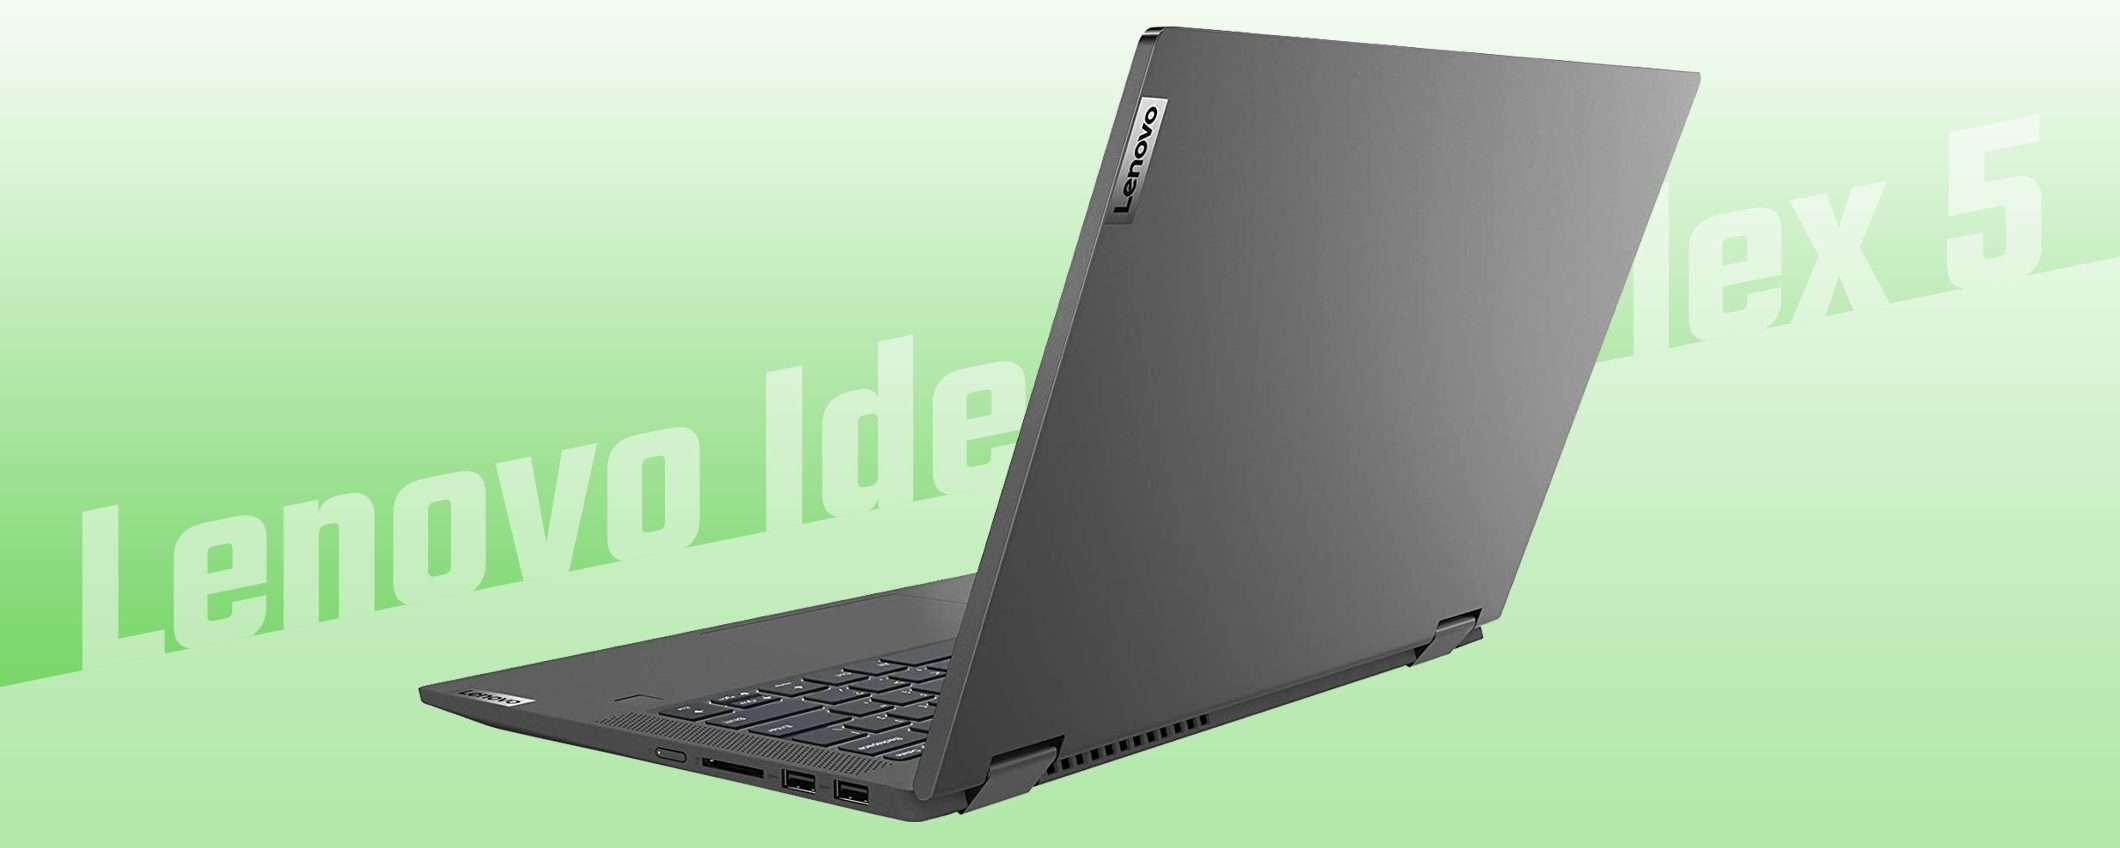 Il notebook Lenovo IdeaPad Flex 5 in sconto a -150 euro